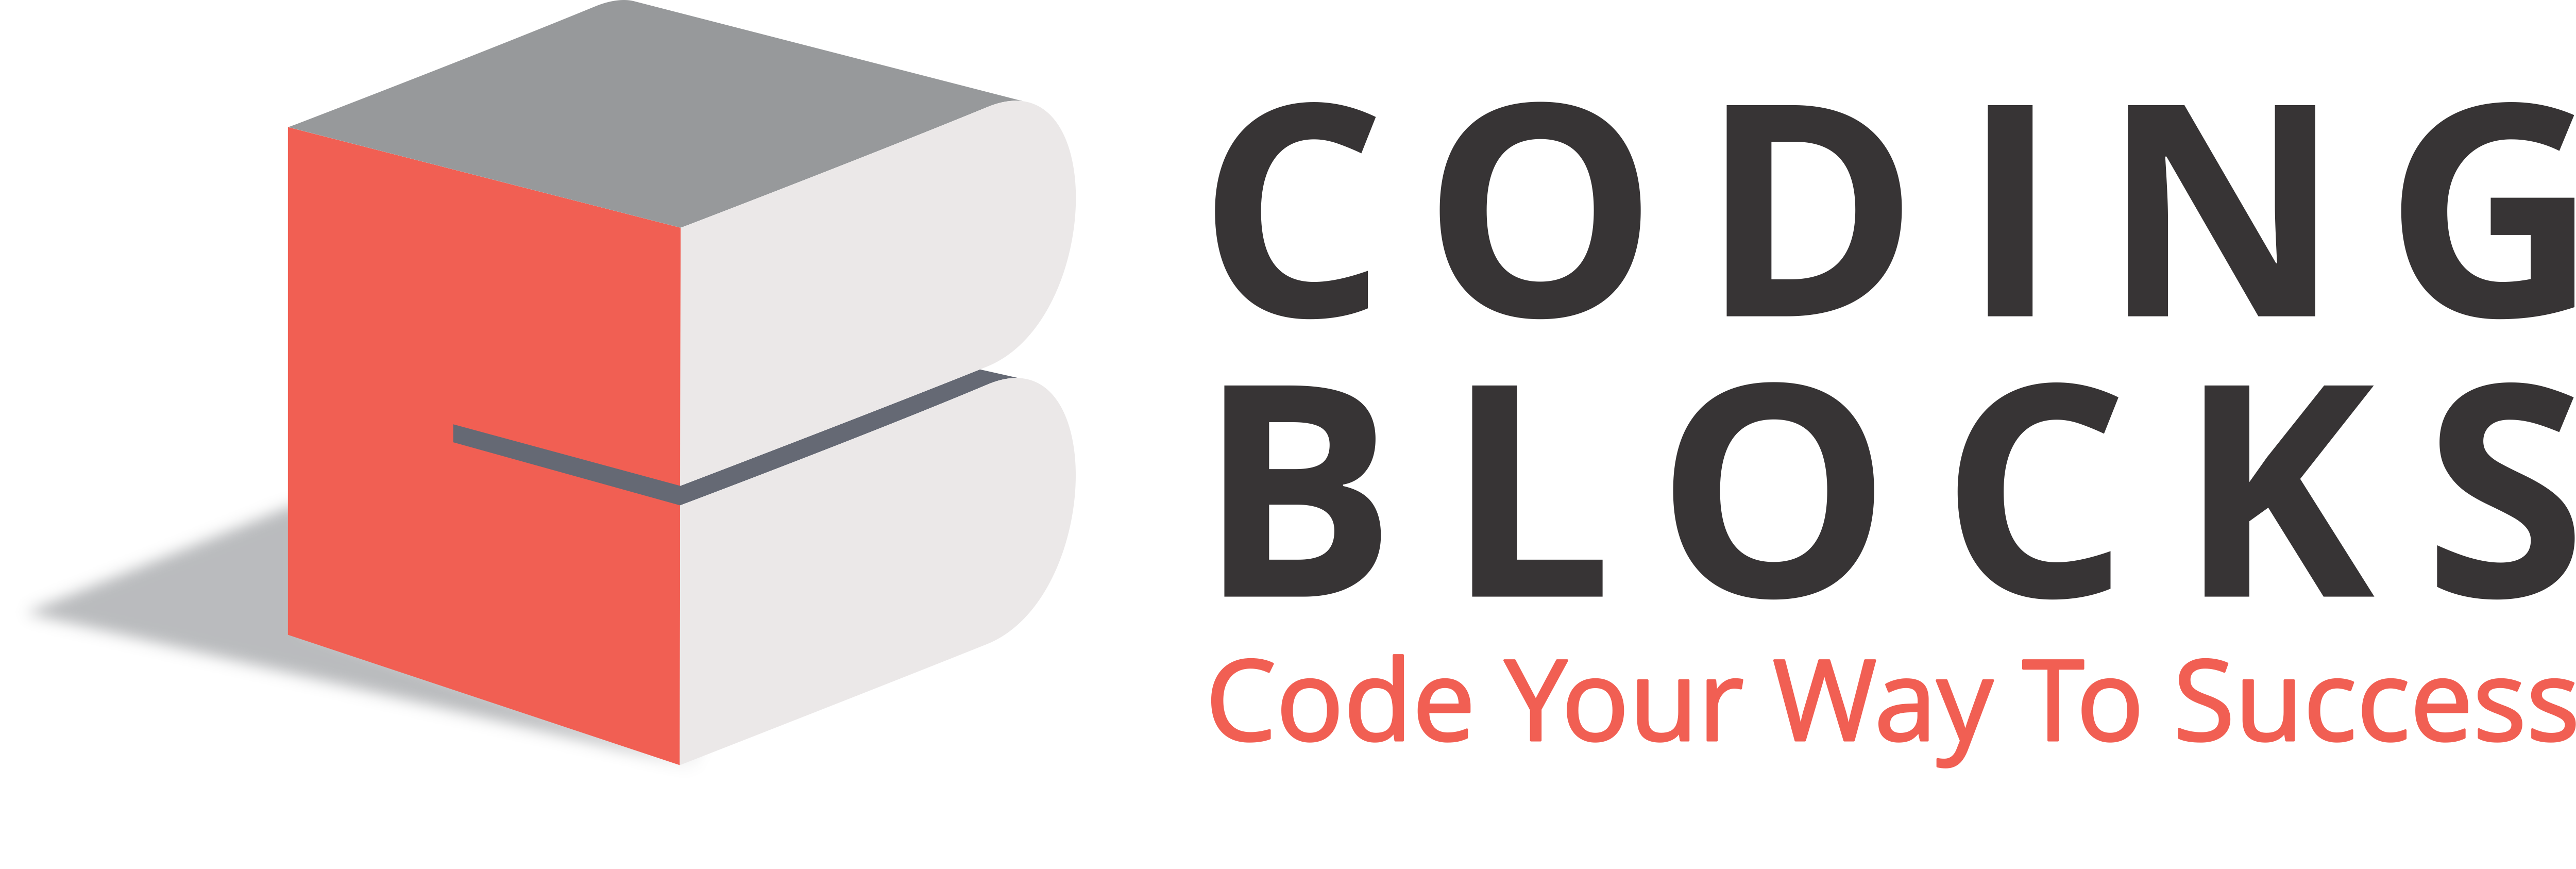 Coding Blocks Discussion Forum